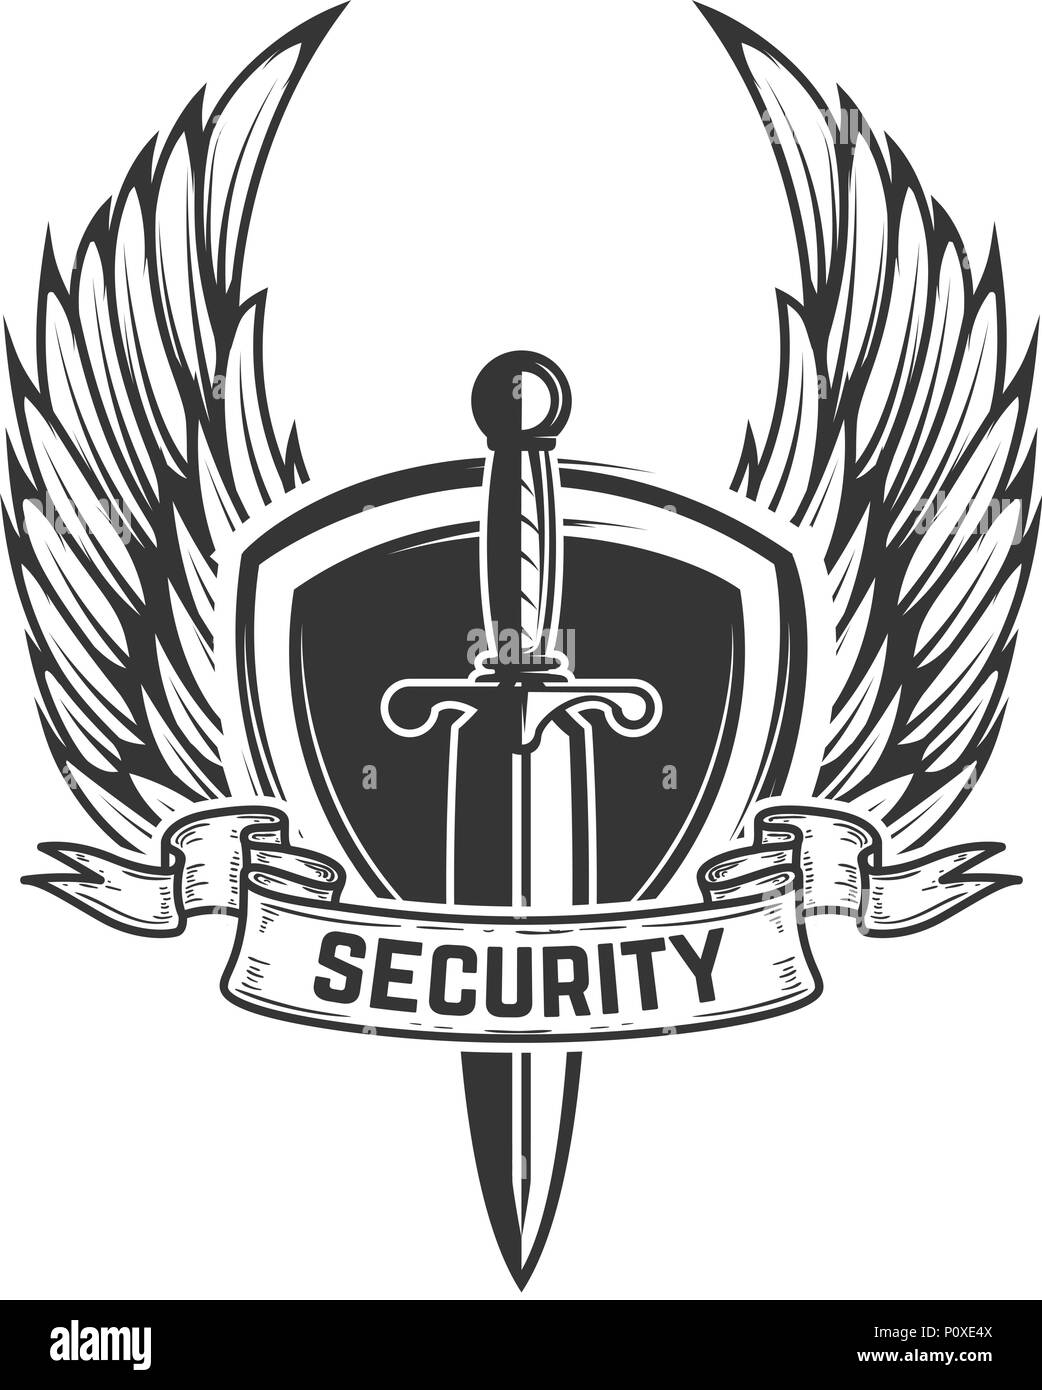 Sword logo Imágenes de stock en blanco y negro - Alamy